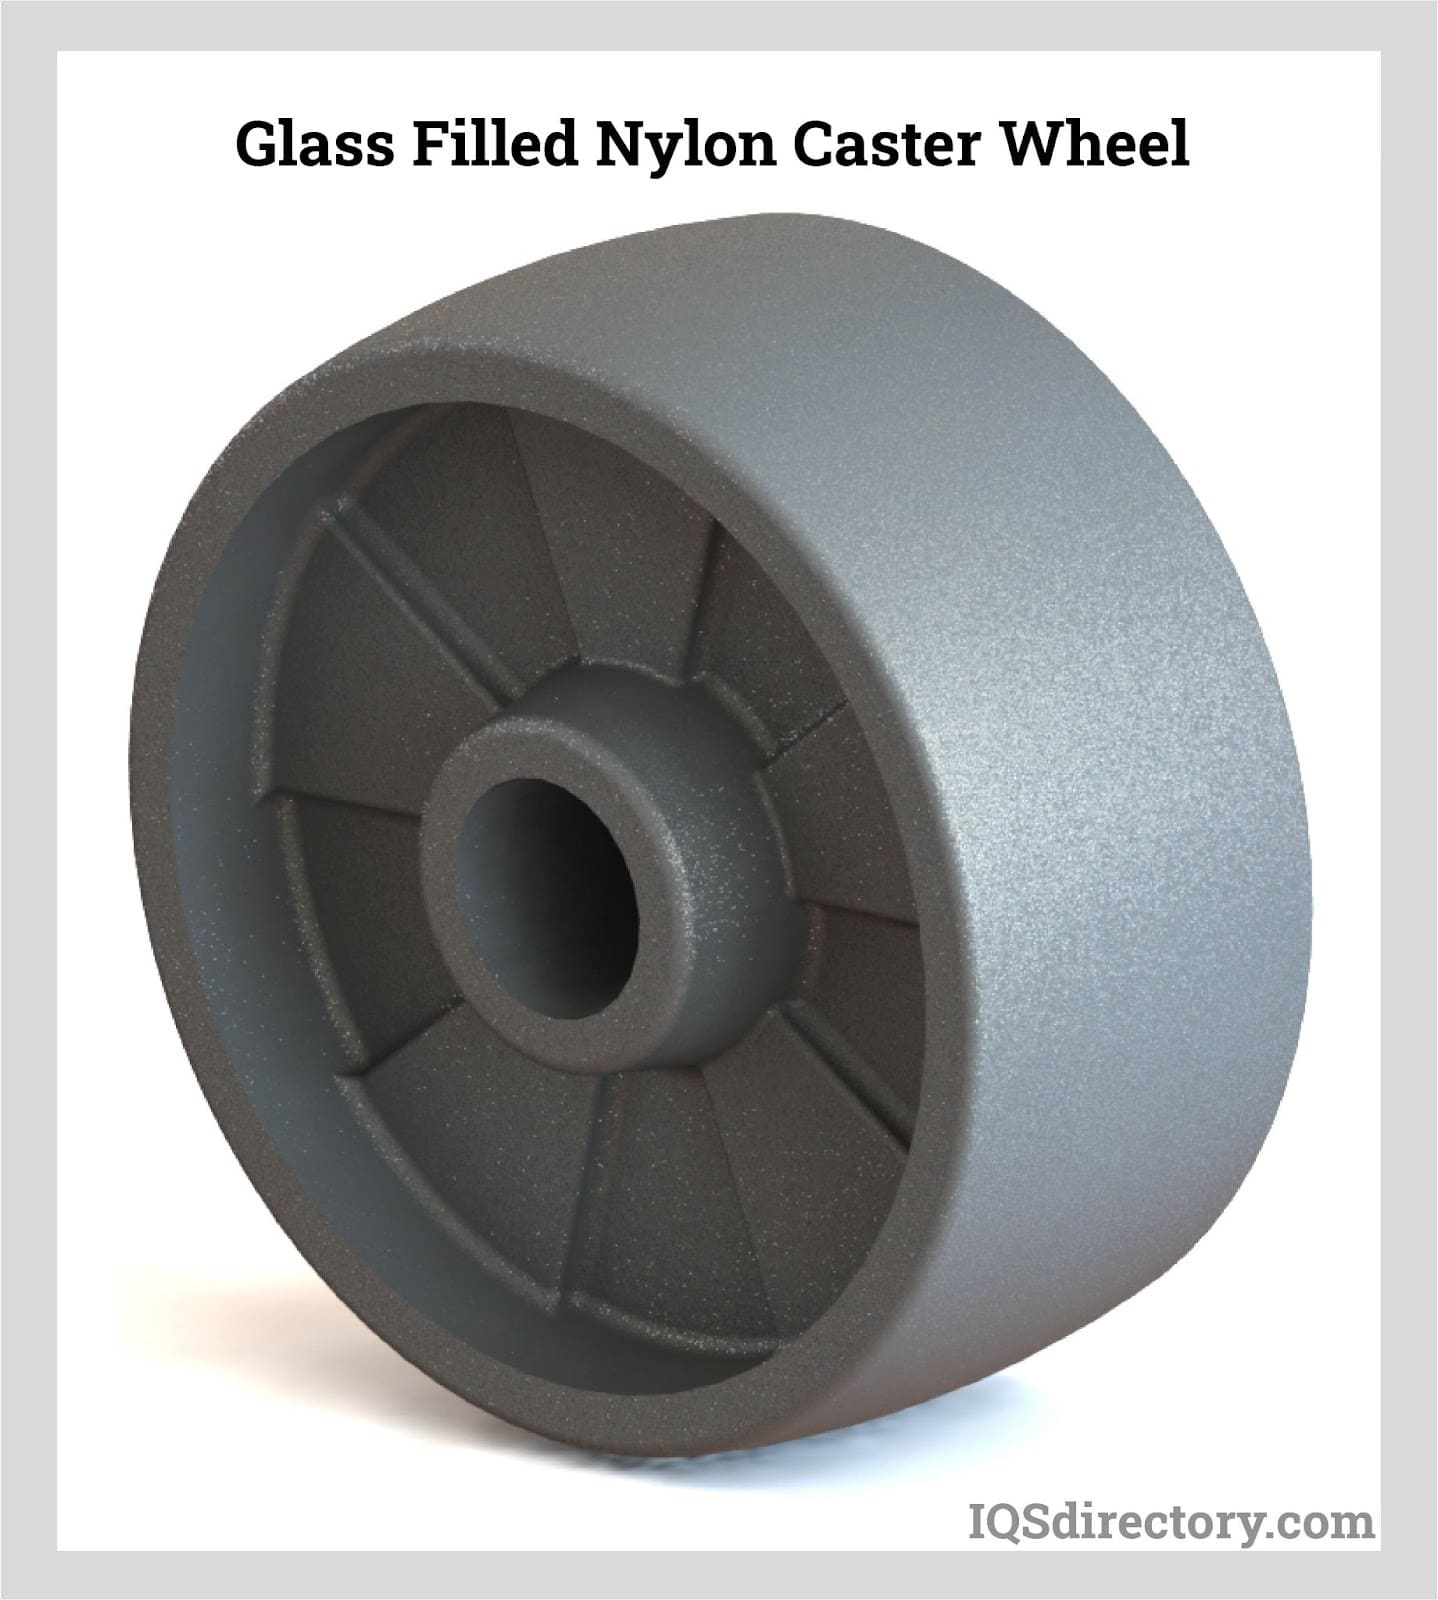 Glass-Filled Nylon Caster Wheel